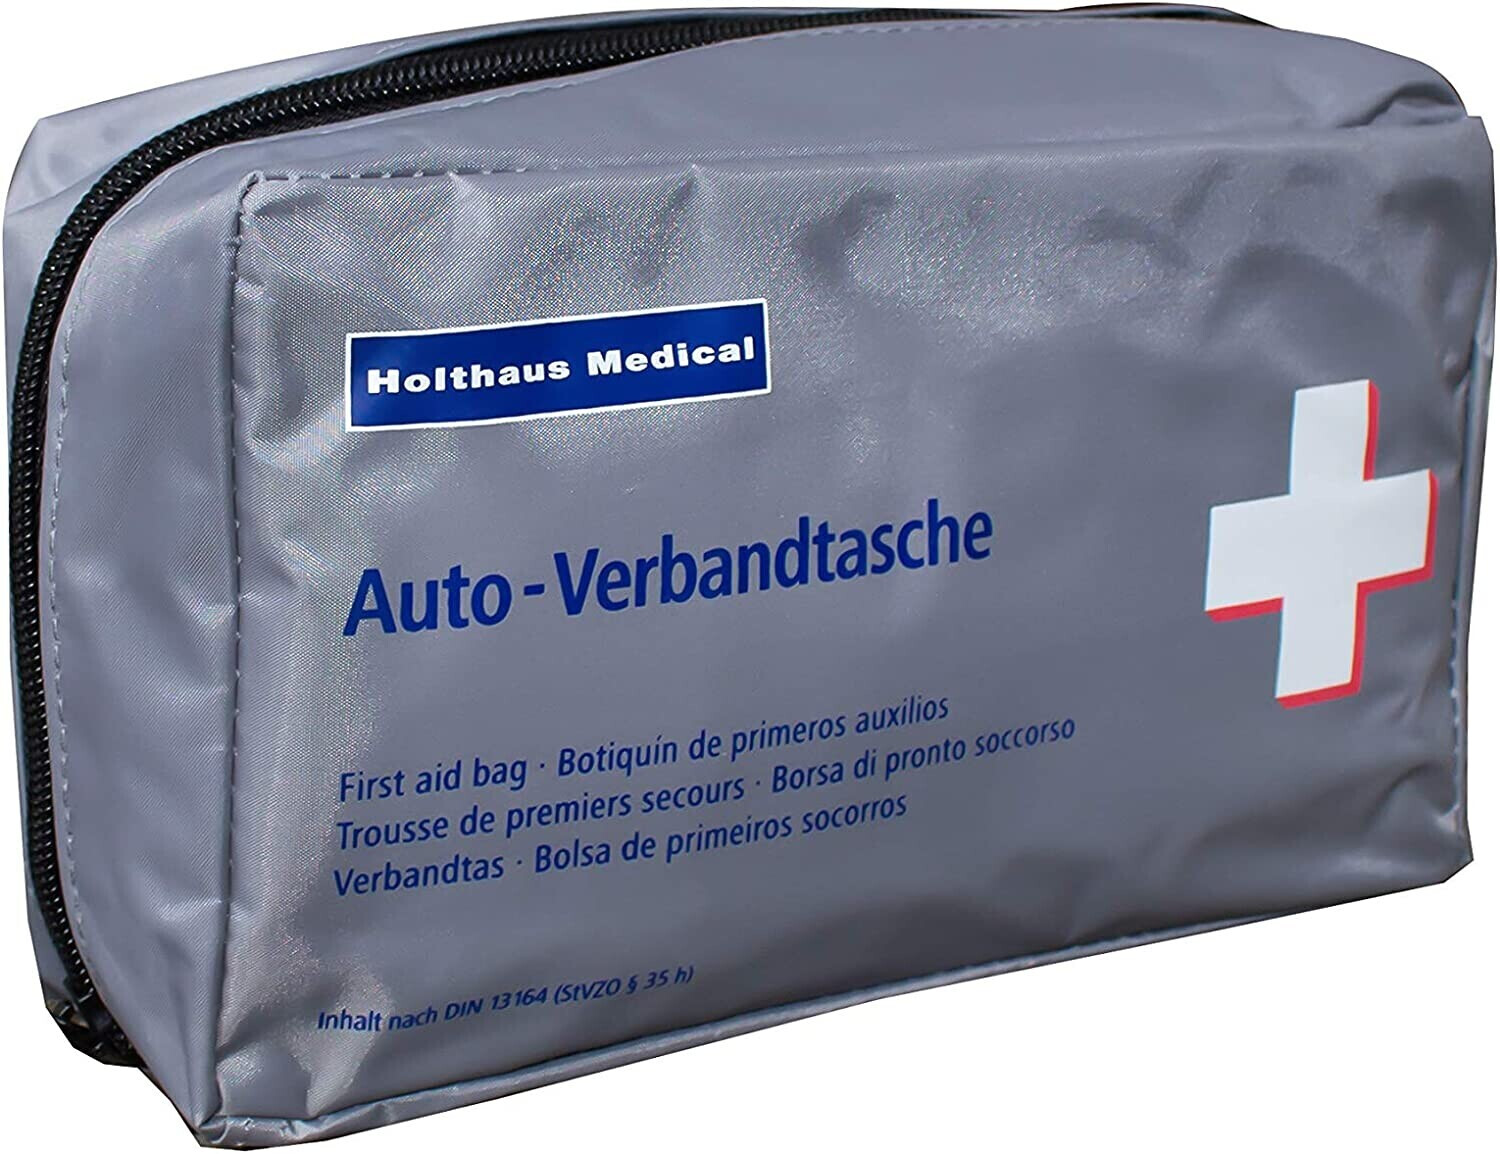 Klassik KFZ-Verbandskasten Auto - Holthaus Medical